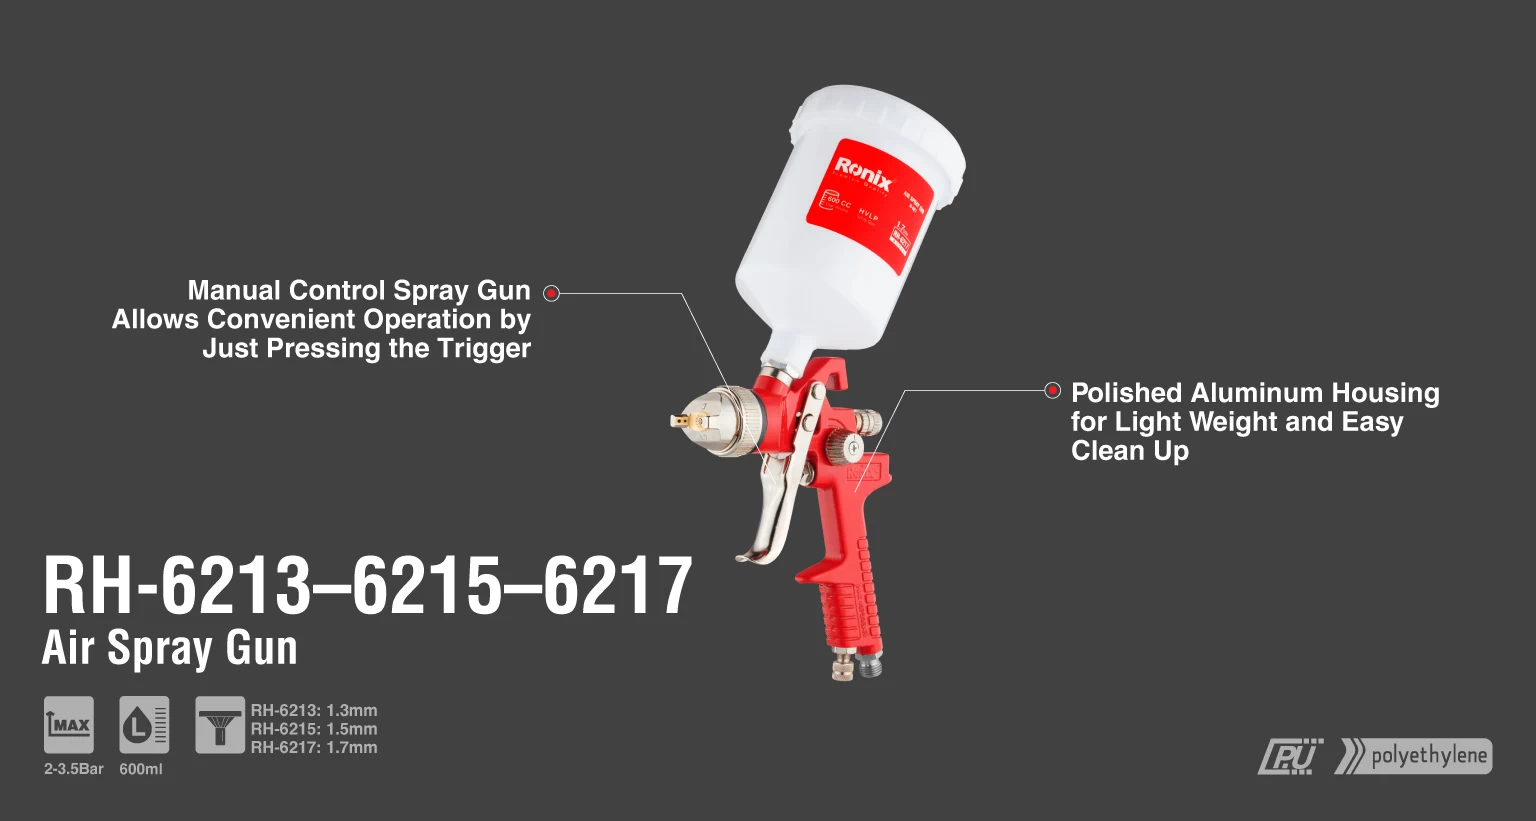 Pistola Pulverizadora de taza plástica y boquilla 1.7mm_details